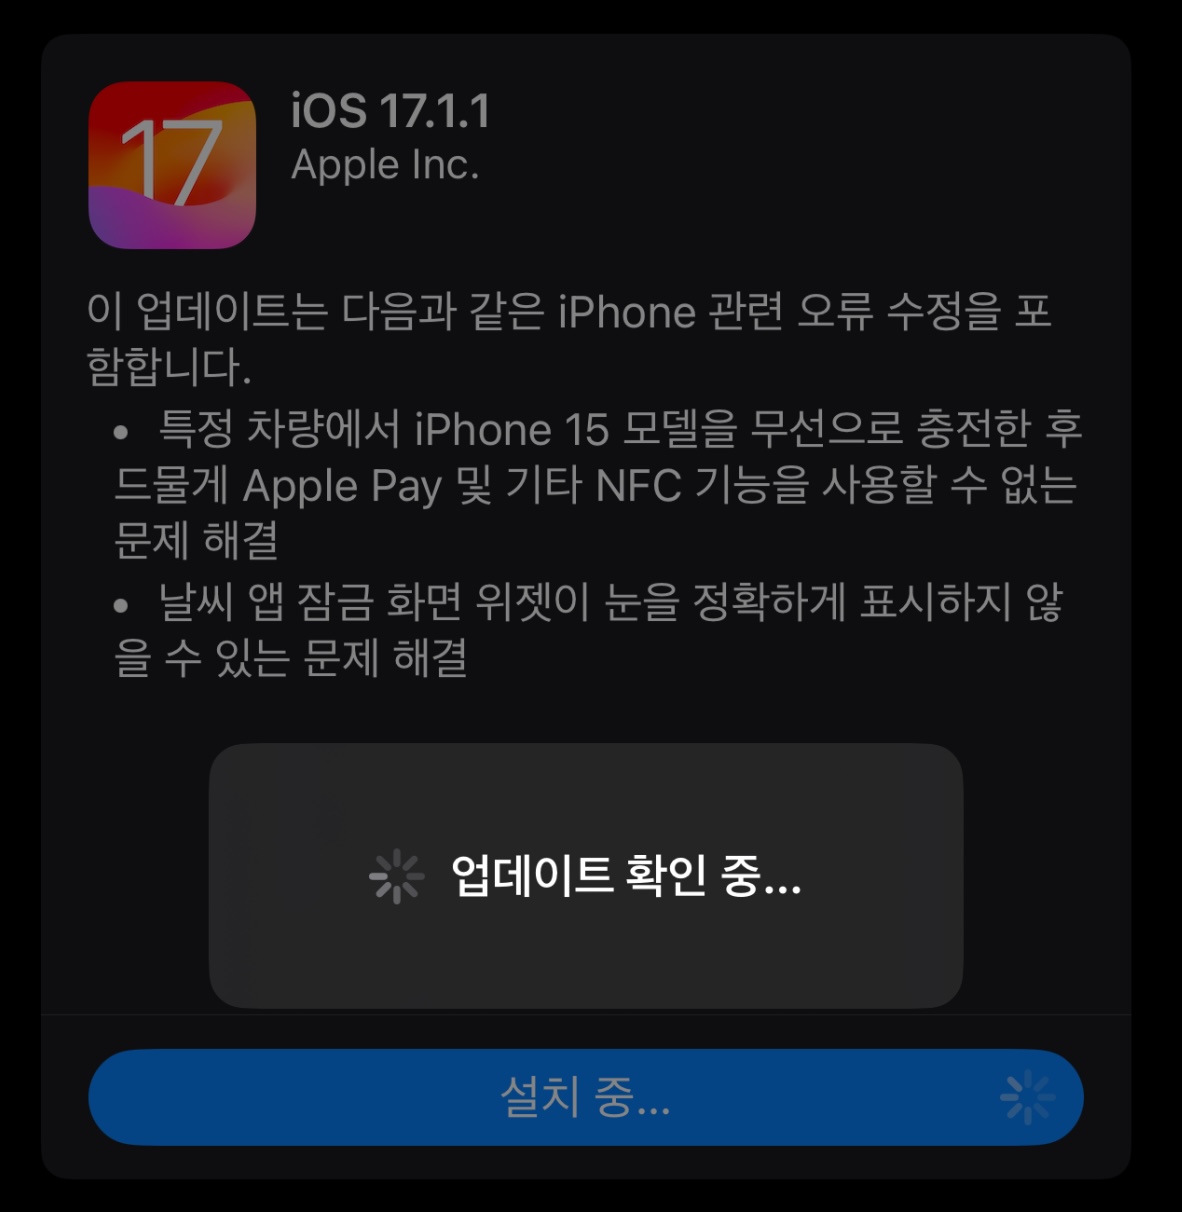 iOS 17.1.1 업데이트